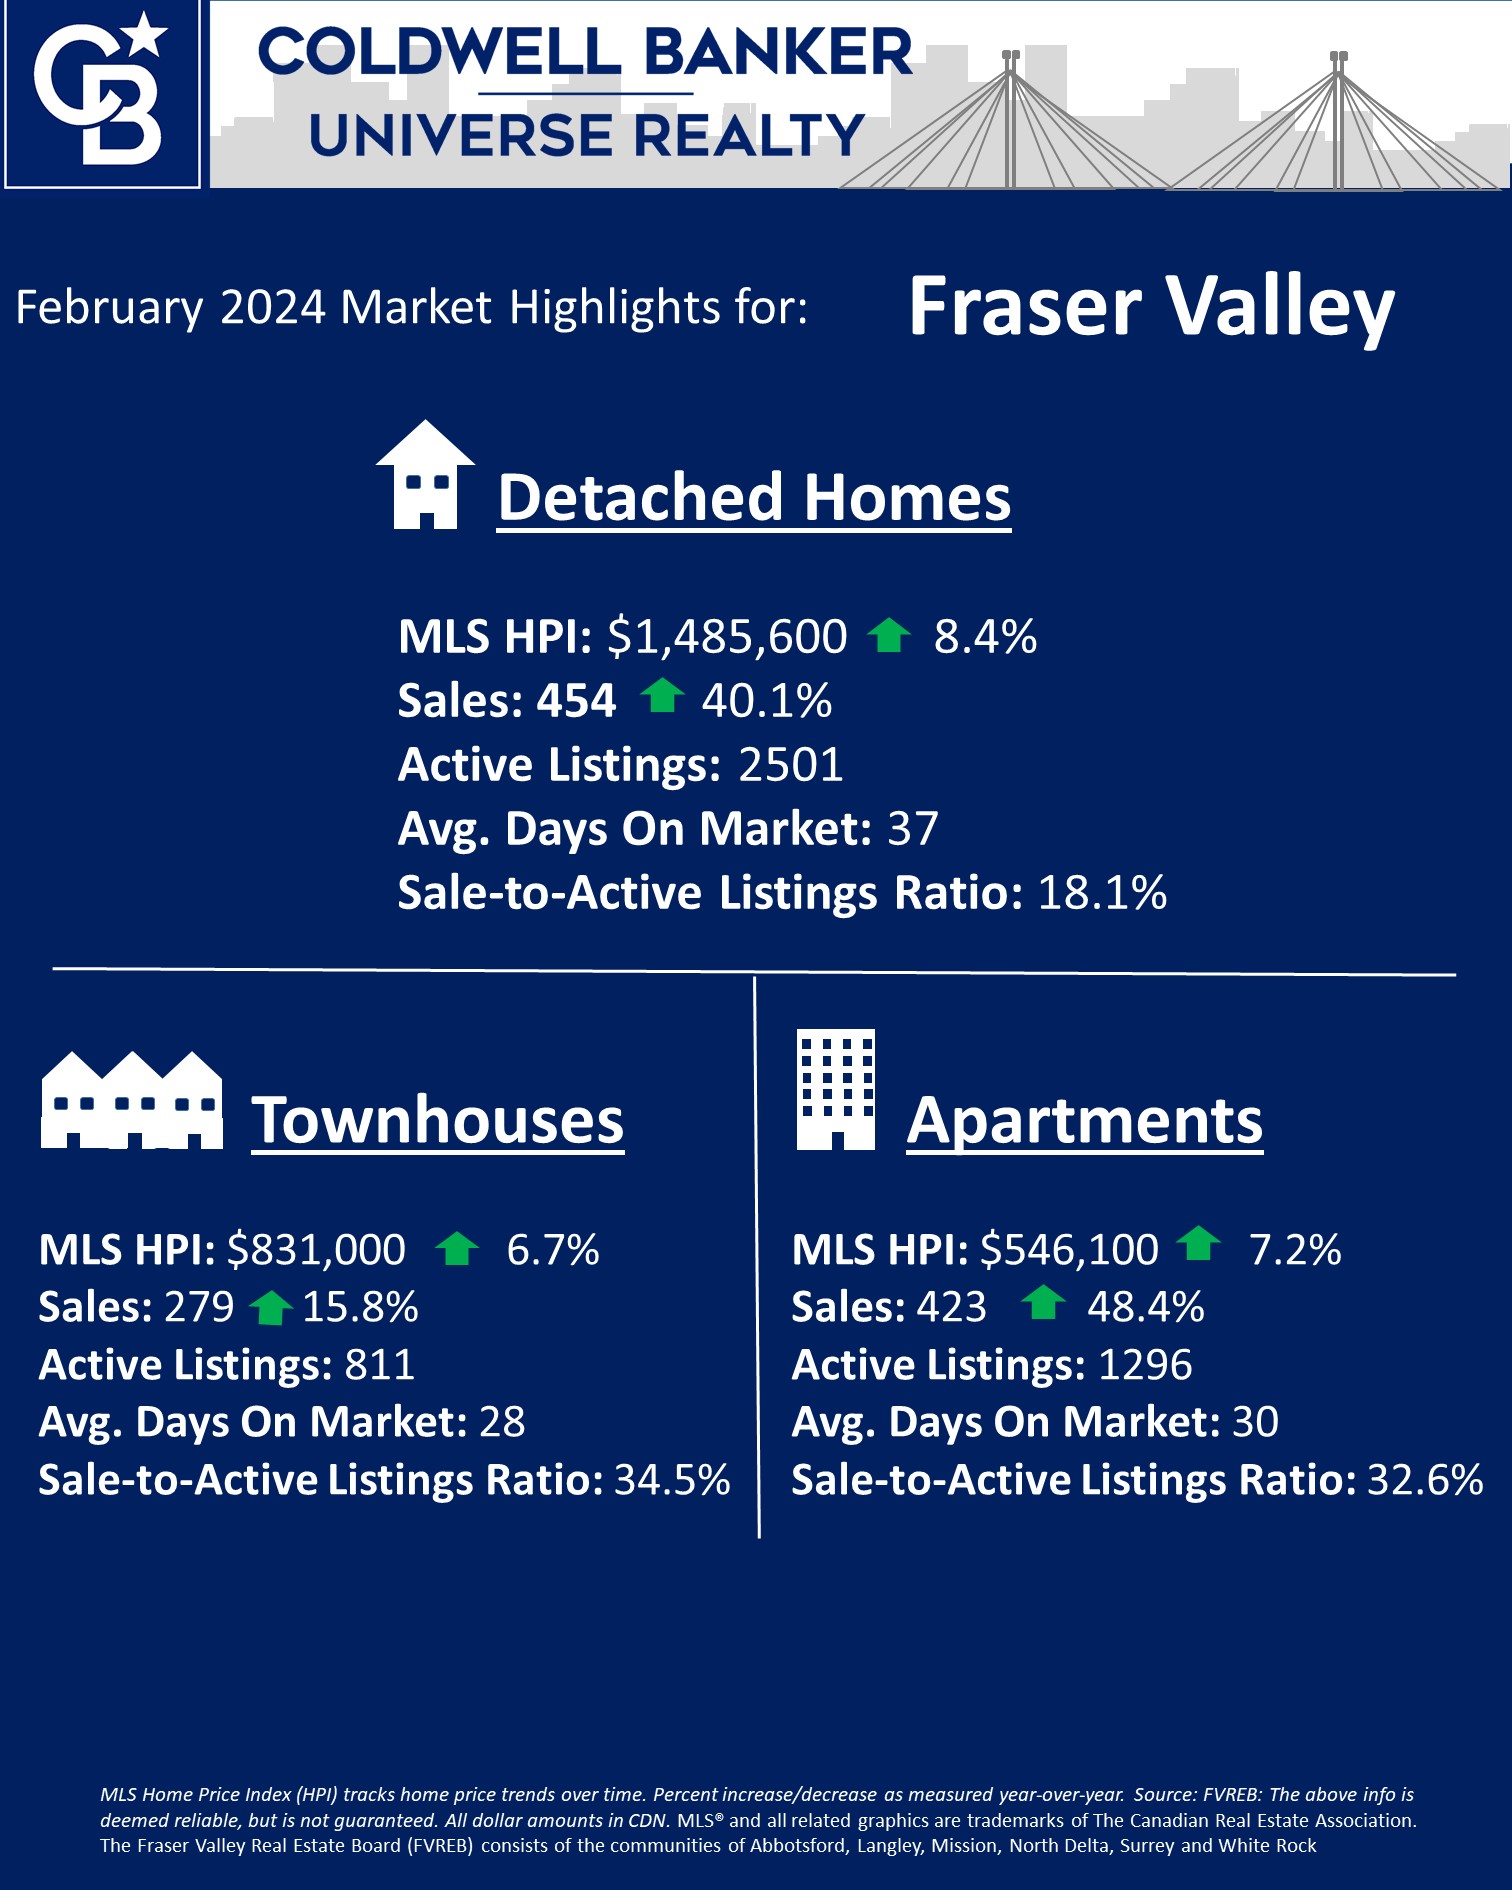 February 2024 Market Update for Fraser Valley